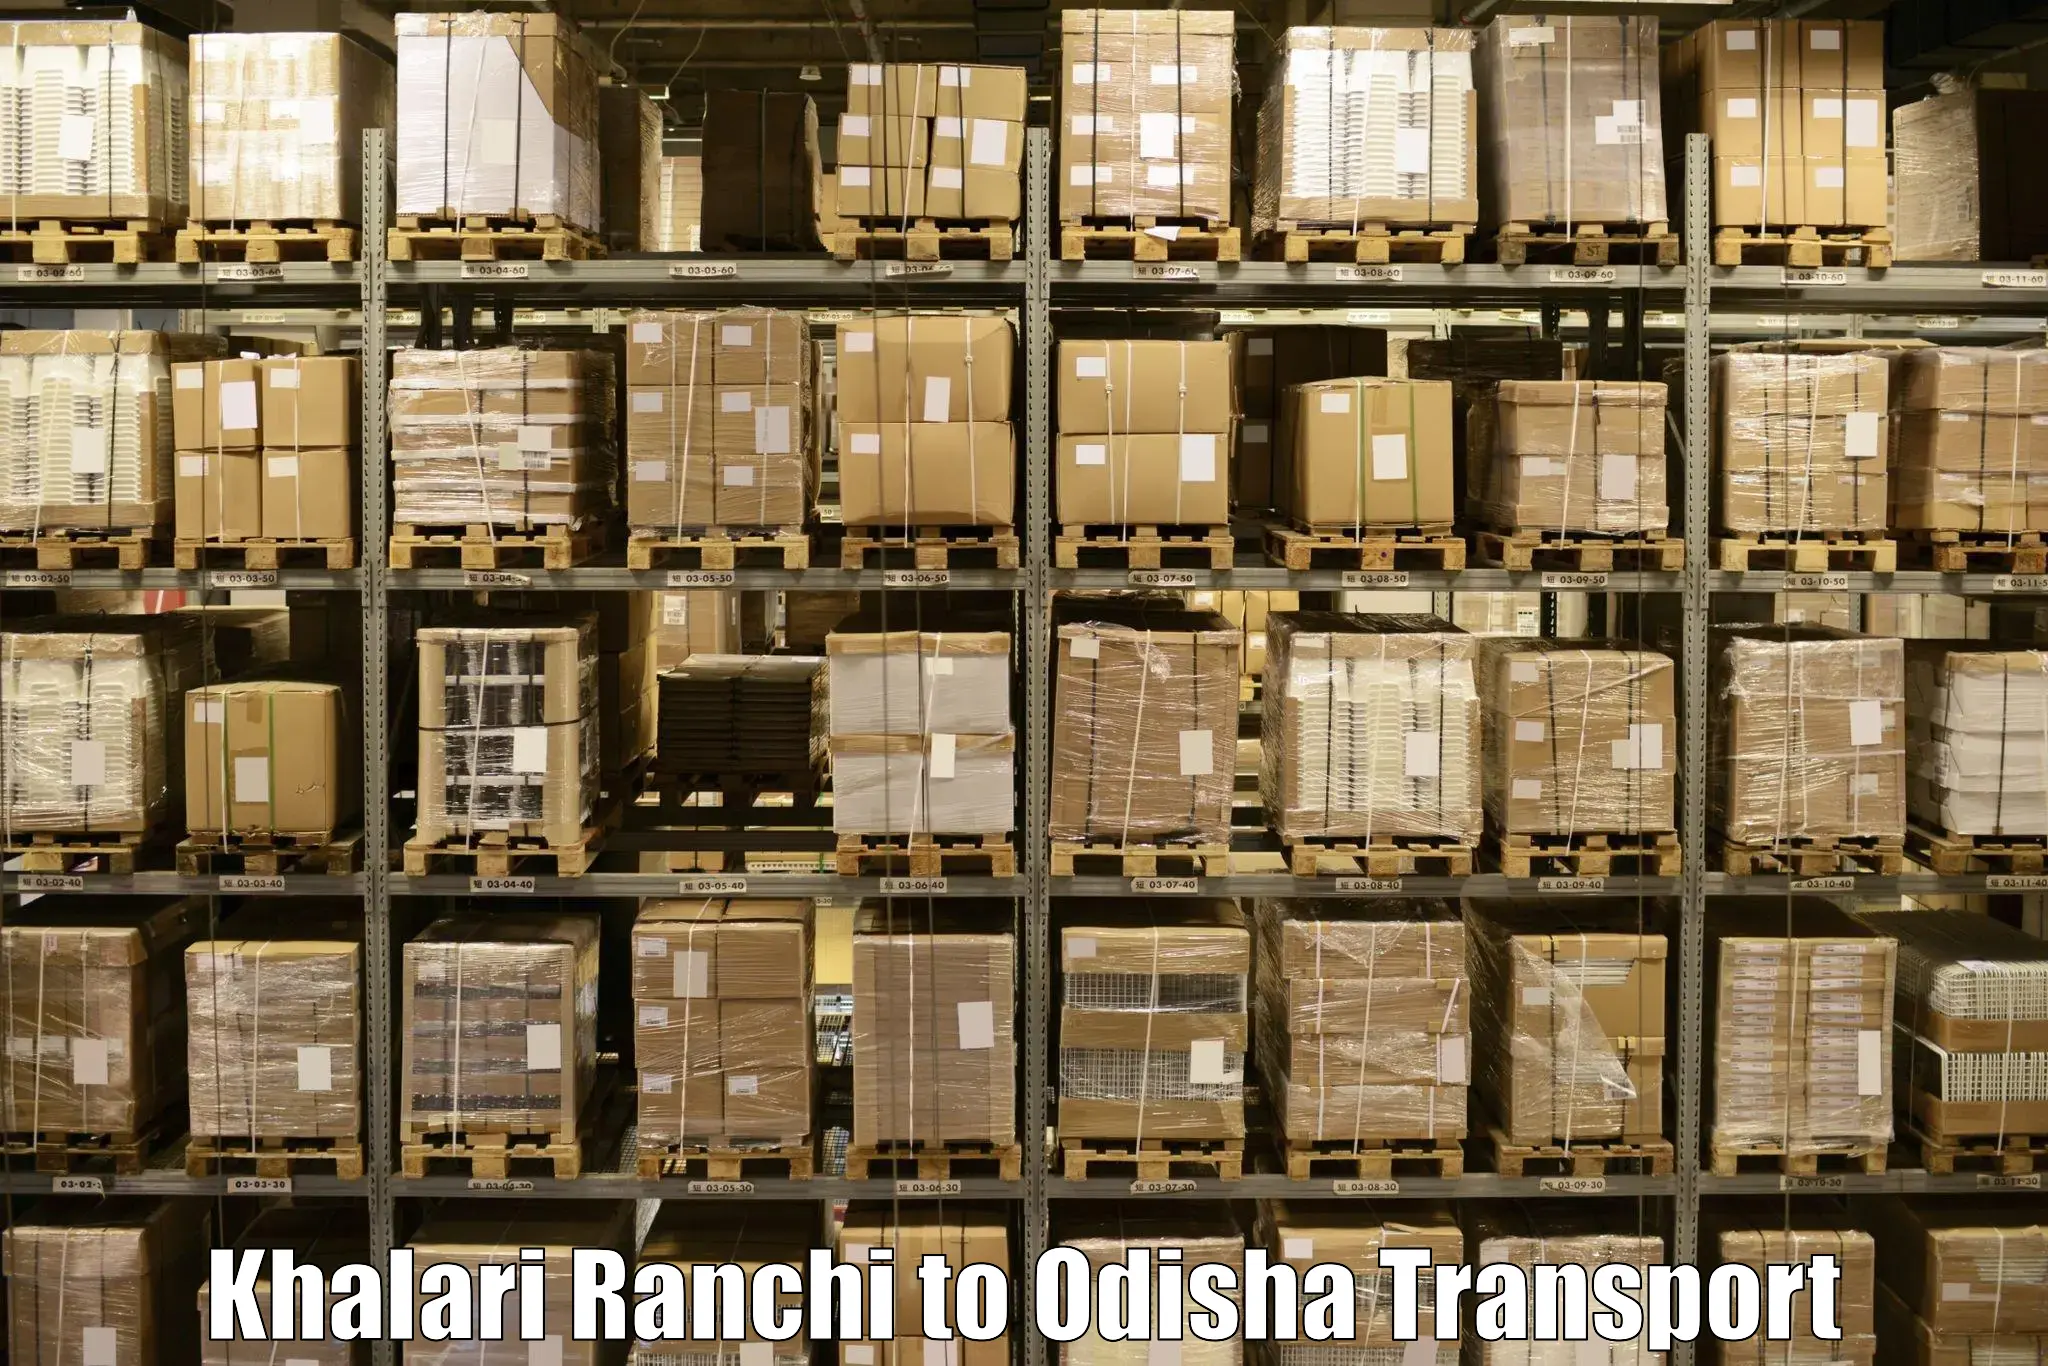 India truck logistics services Khalari Ranchi to Barbil